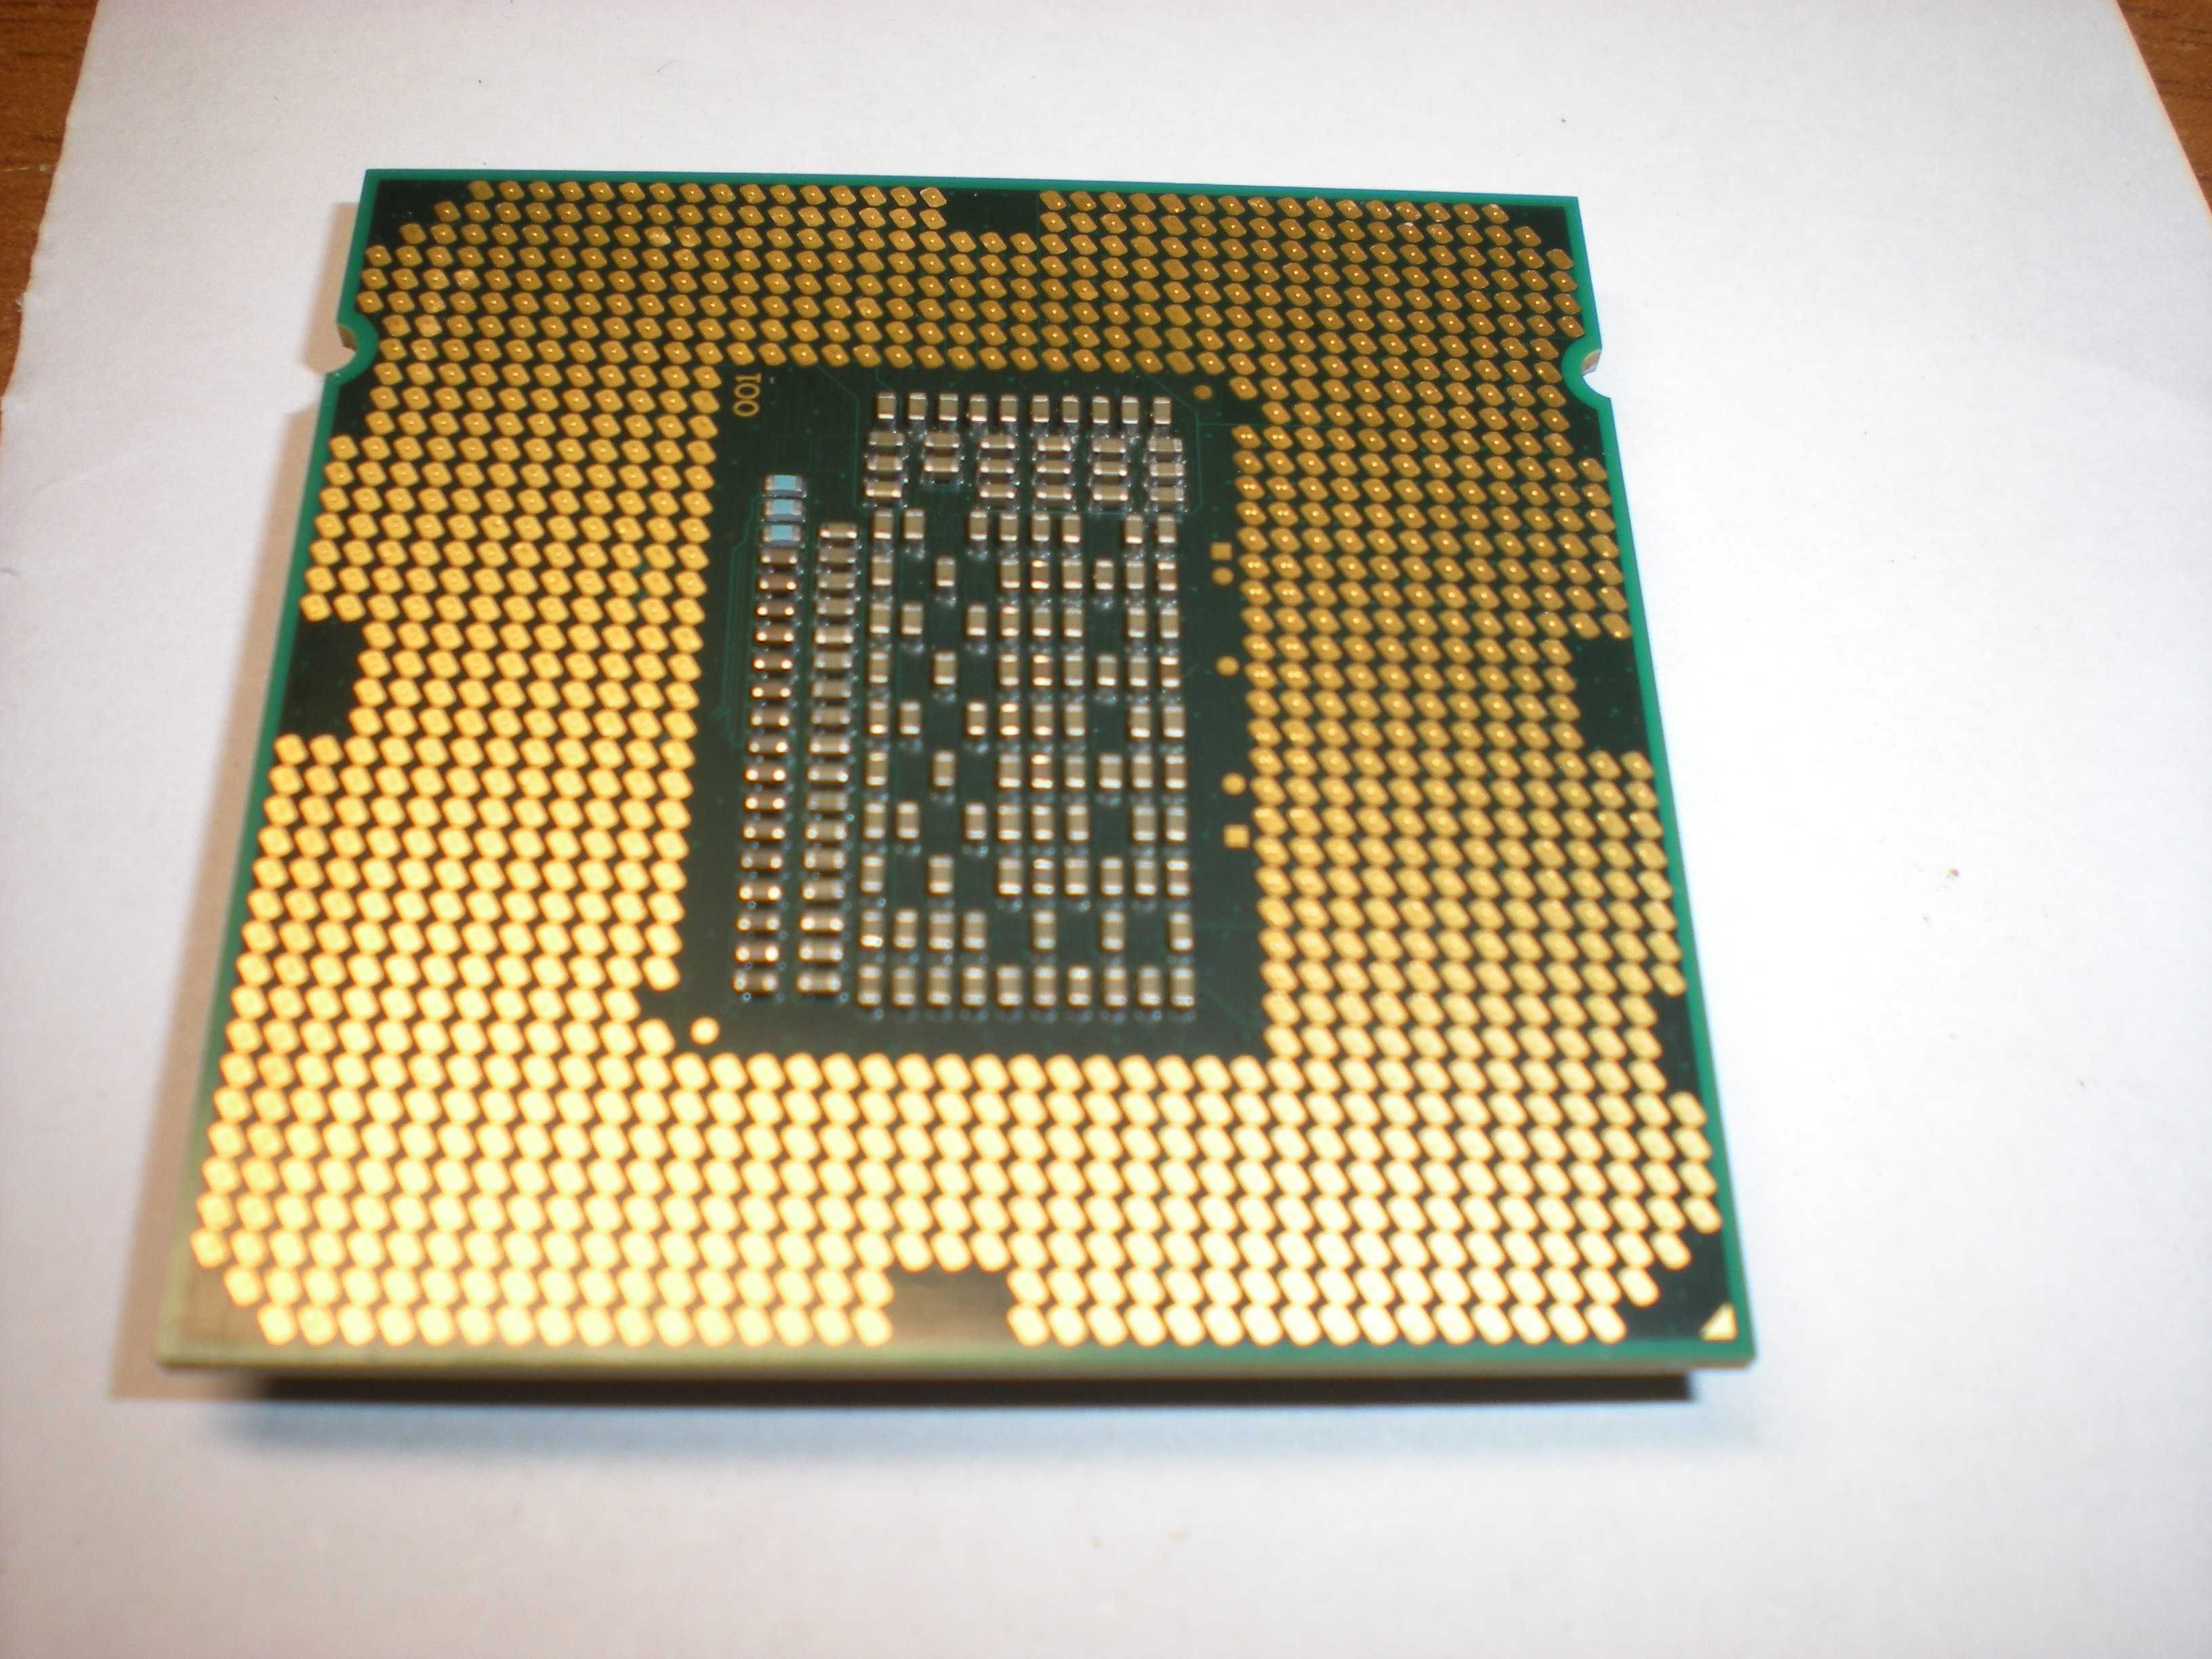 Процесор Intel Core i5-2320 4x4x3.0 3,30 ГГц 6 МБ LGA1155